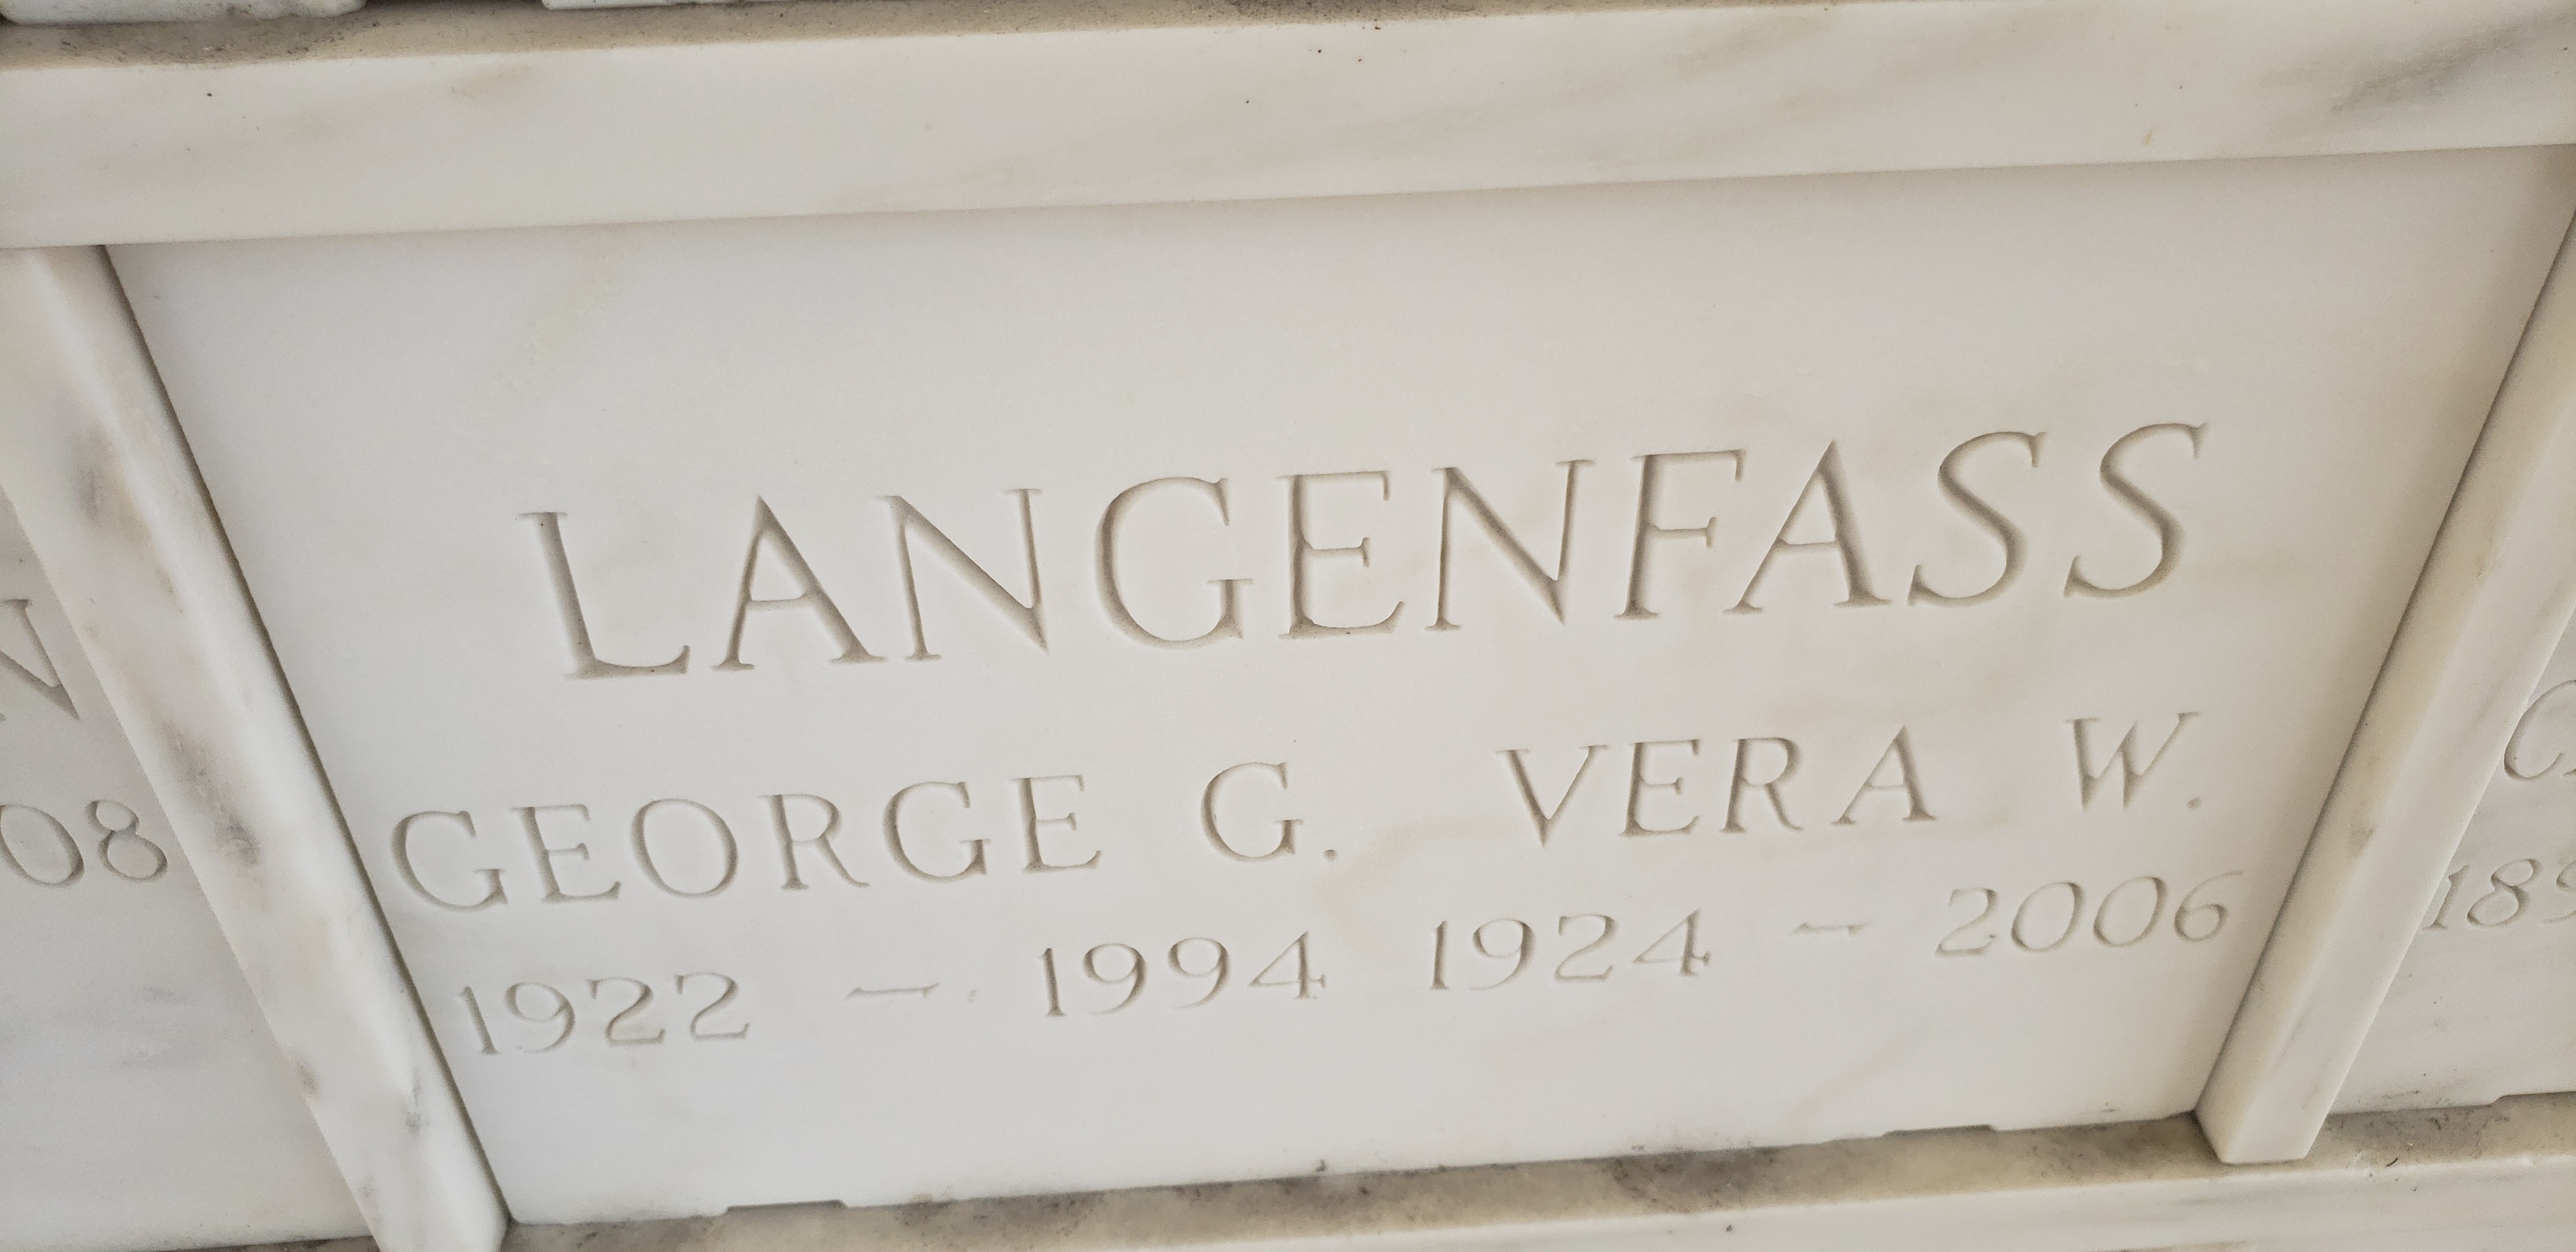 George G Langenfass